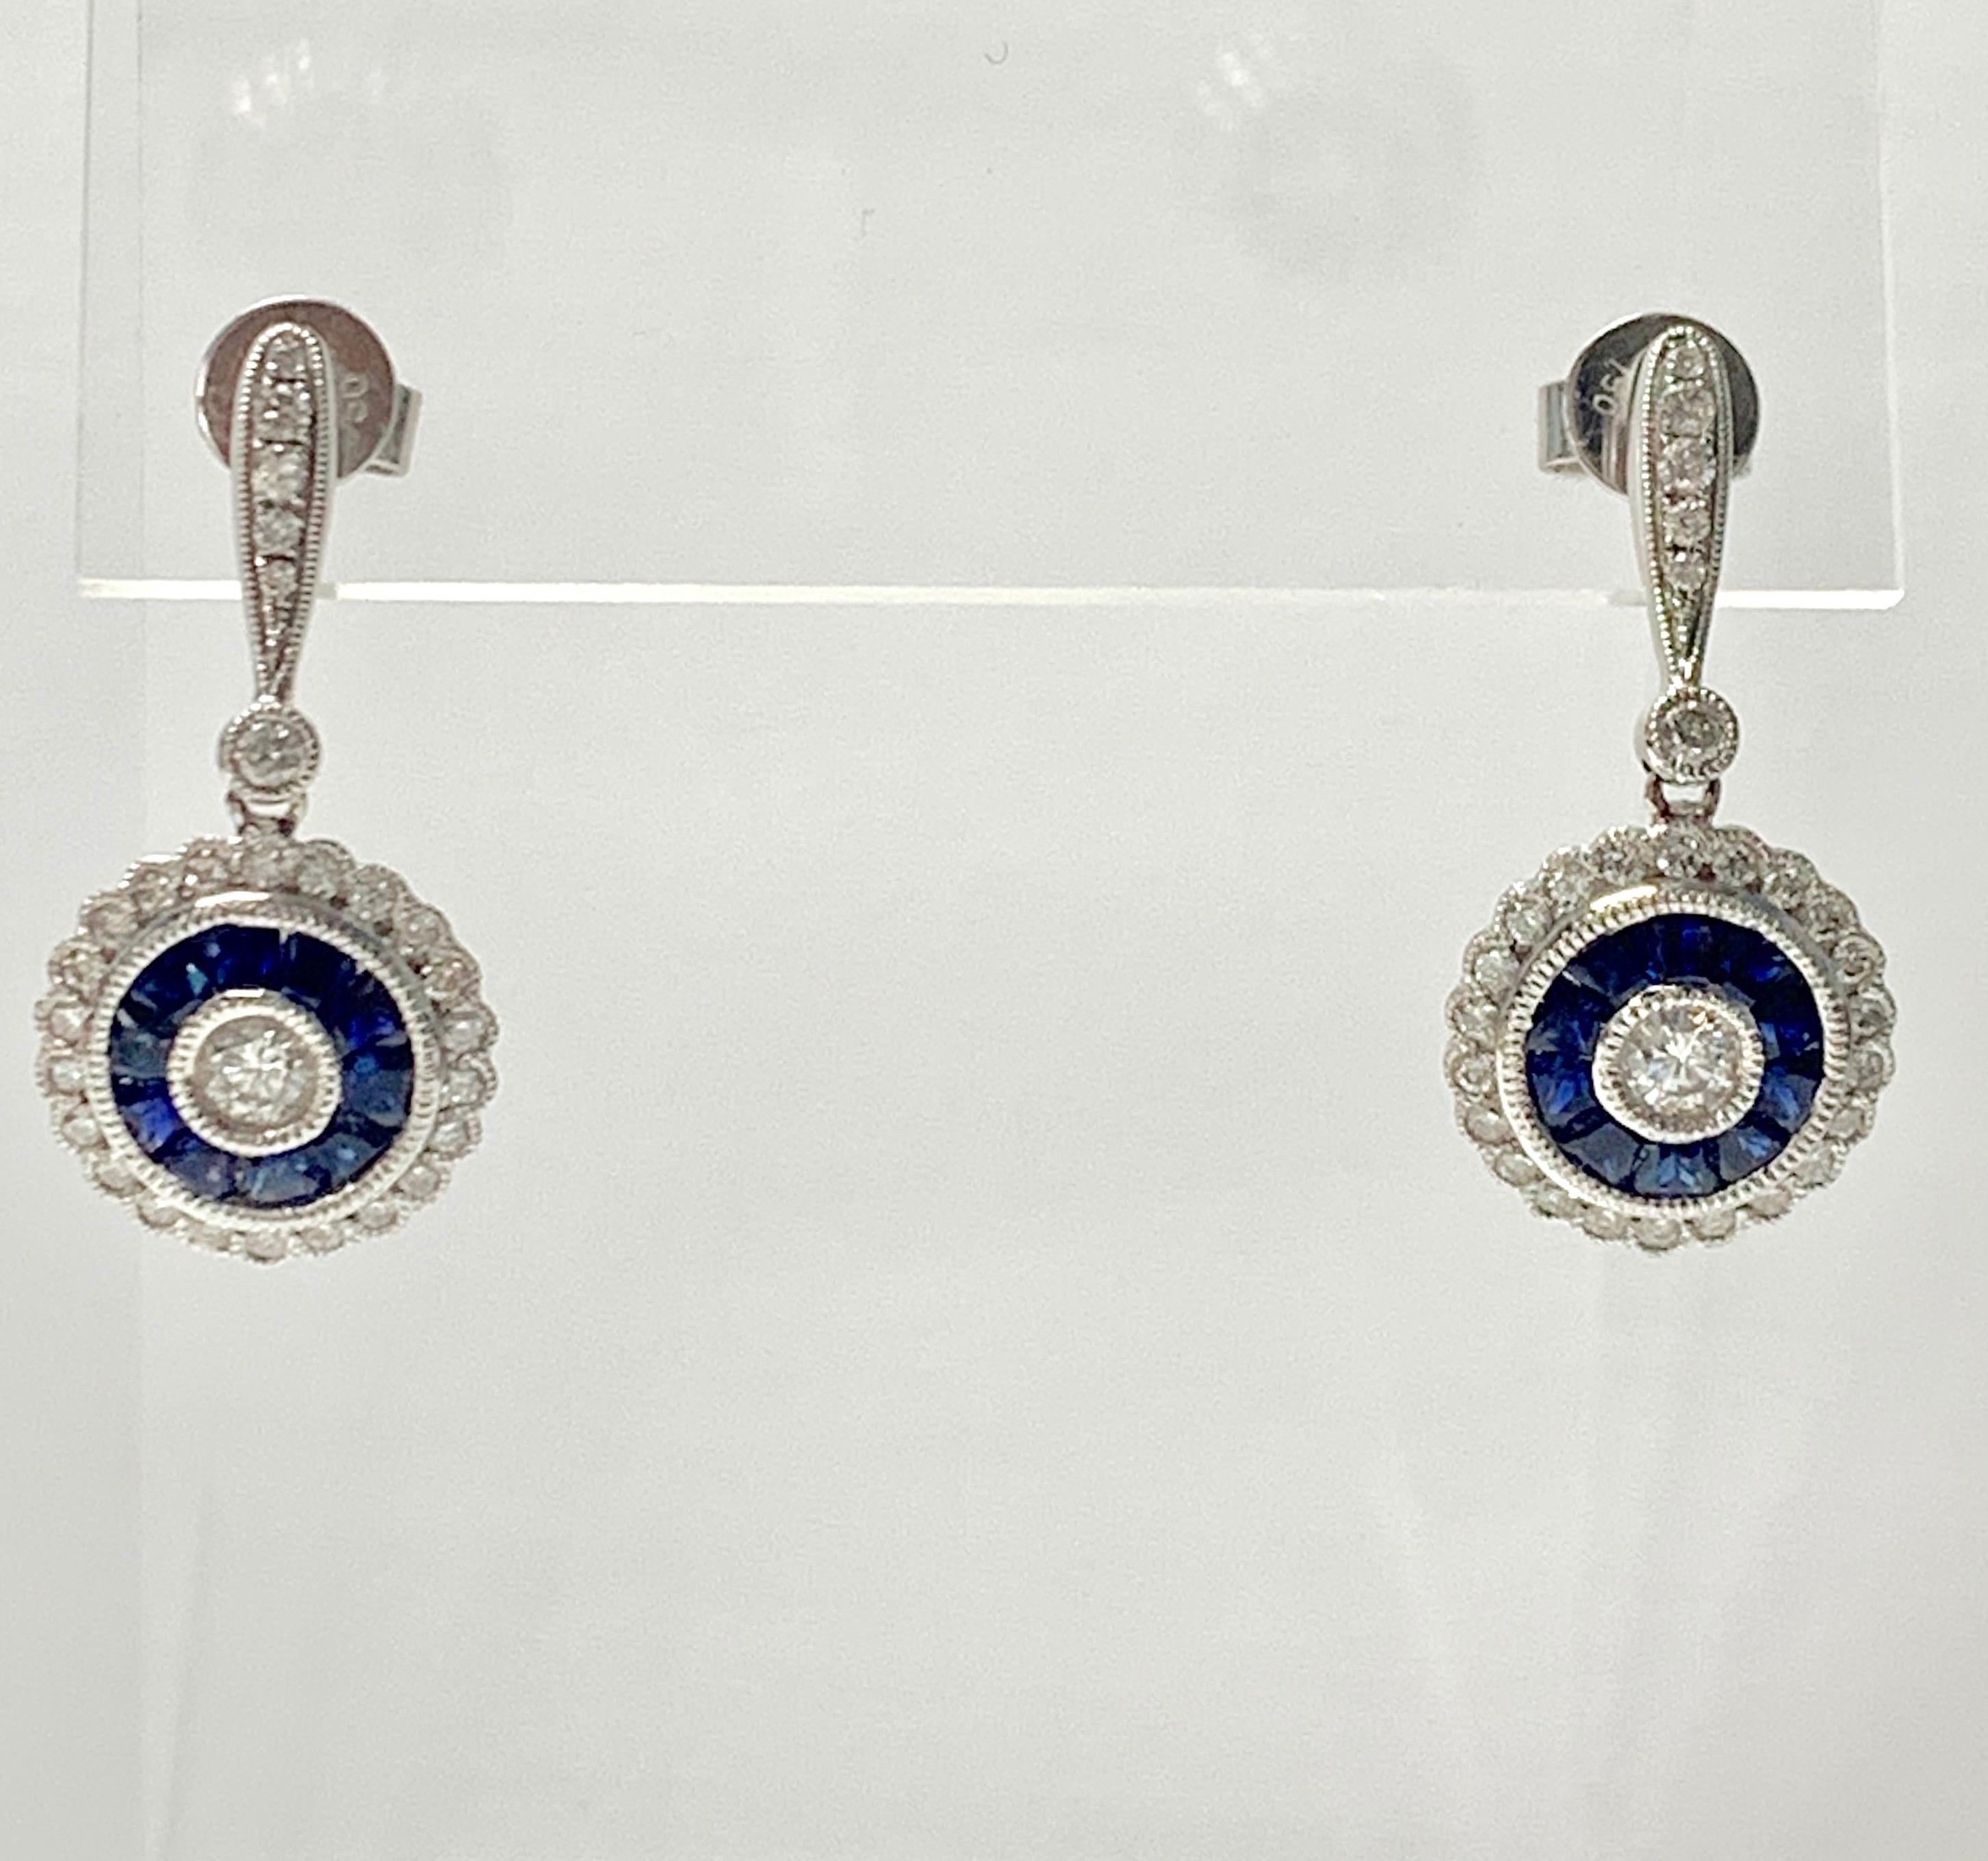 Ohrringe mit blauem Saphir und Diamanten, handgefertigt aus Platin und 18 Karat Weißgold. 
Die Einzelheiten sind wie folgt:
Gewicht des Diamanten: 1 Karat (Farbe G und VS2) 
Metall : Platin und 18k Weißgold 
Maße : 1 Zoll lang 
